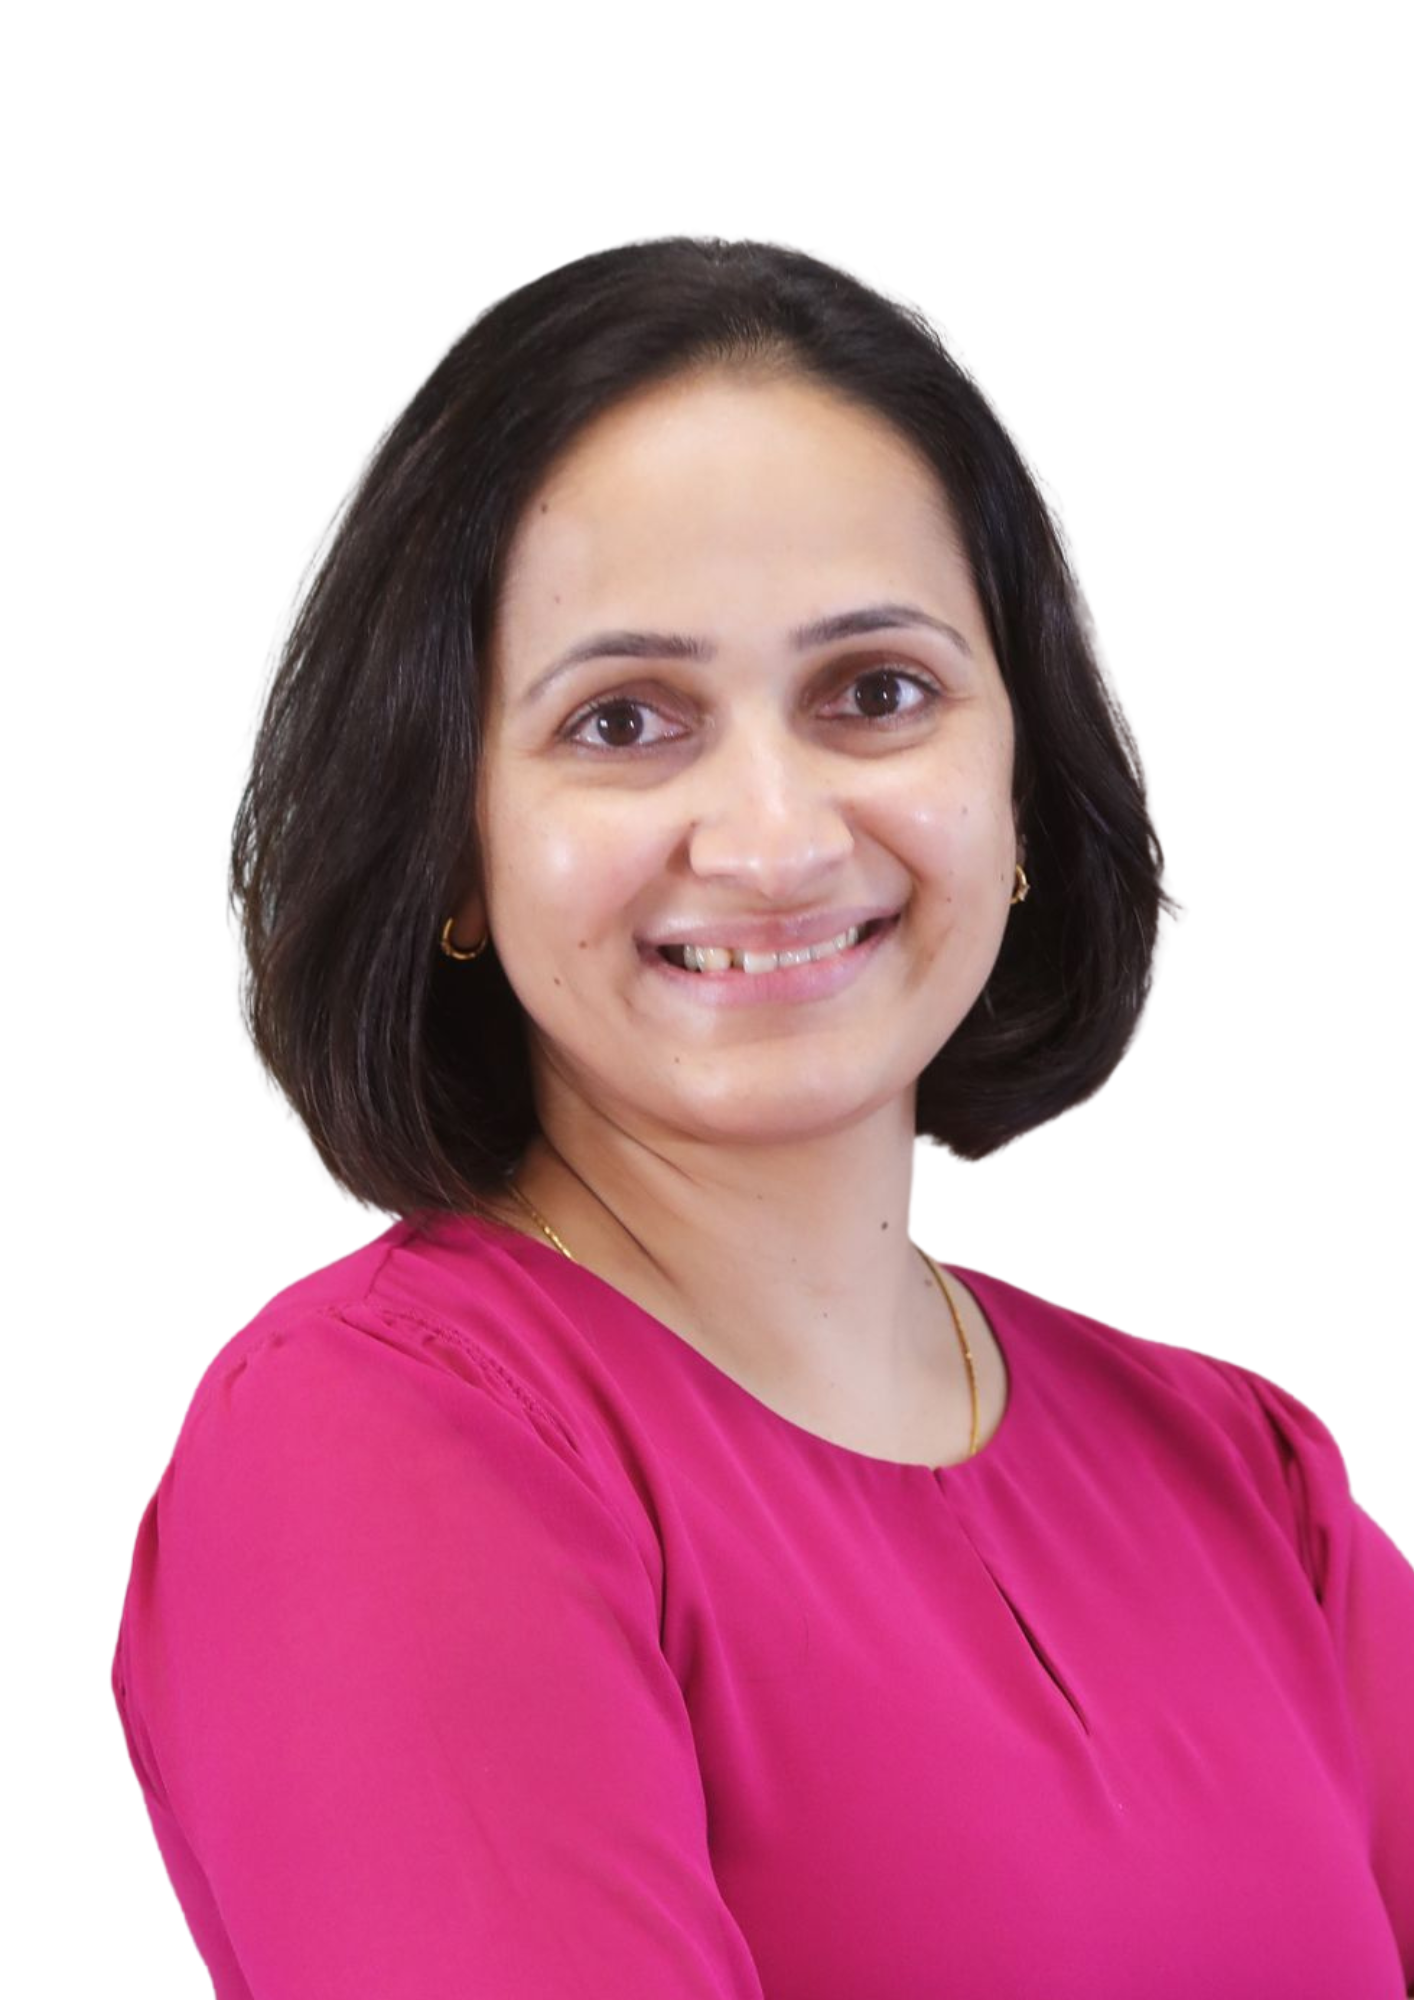 Consultant Endocrinologist Dr. Divya Namboodiri